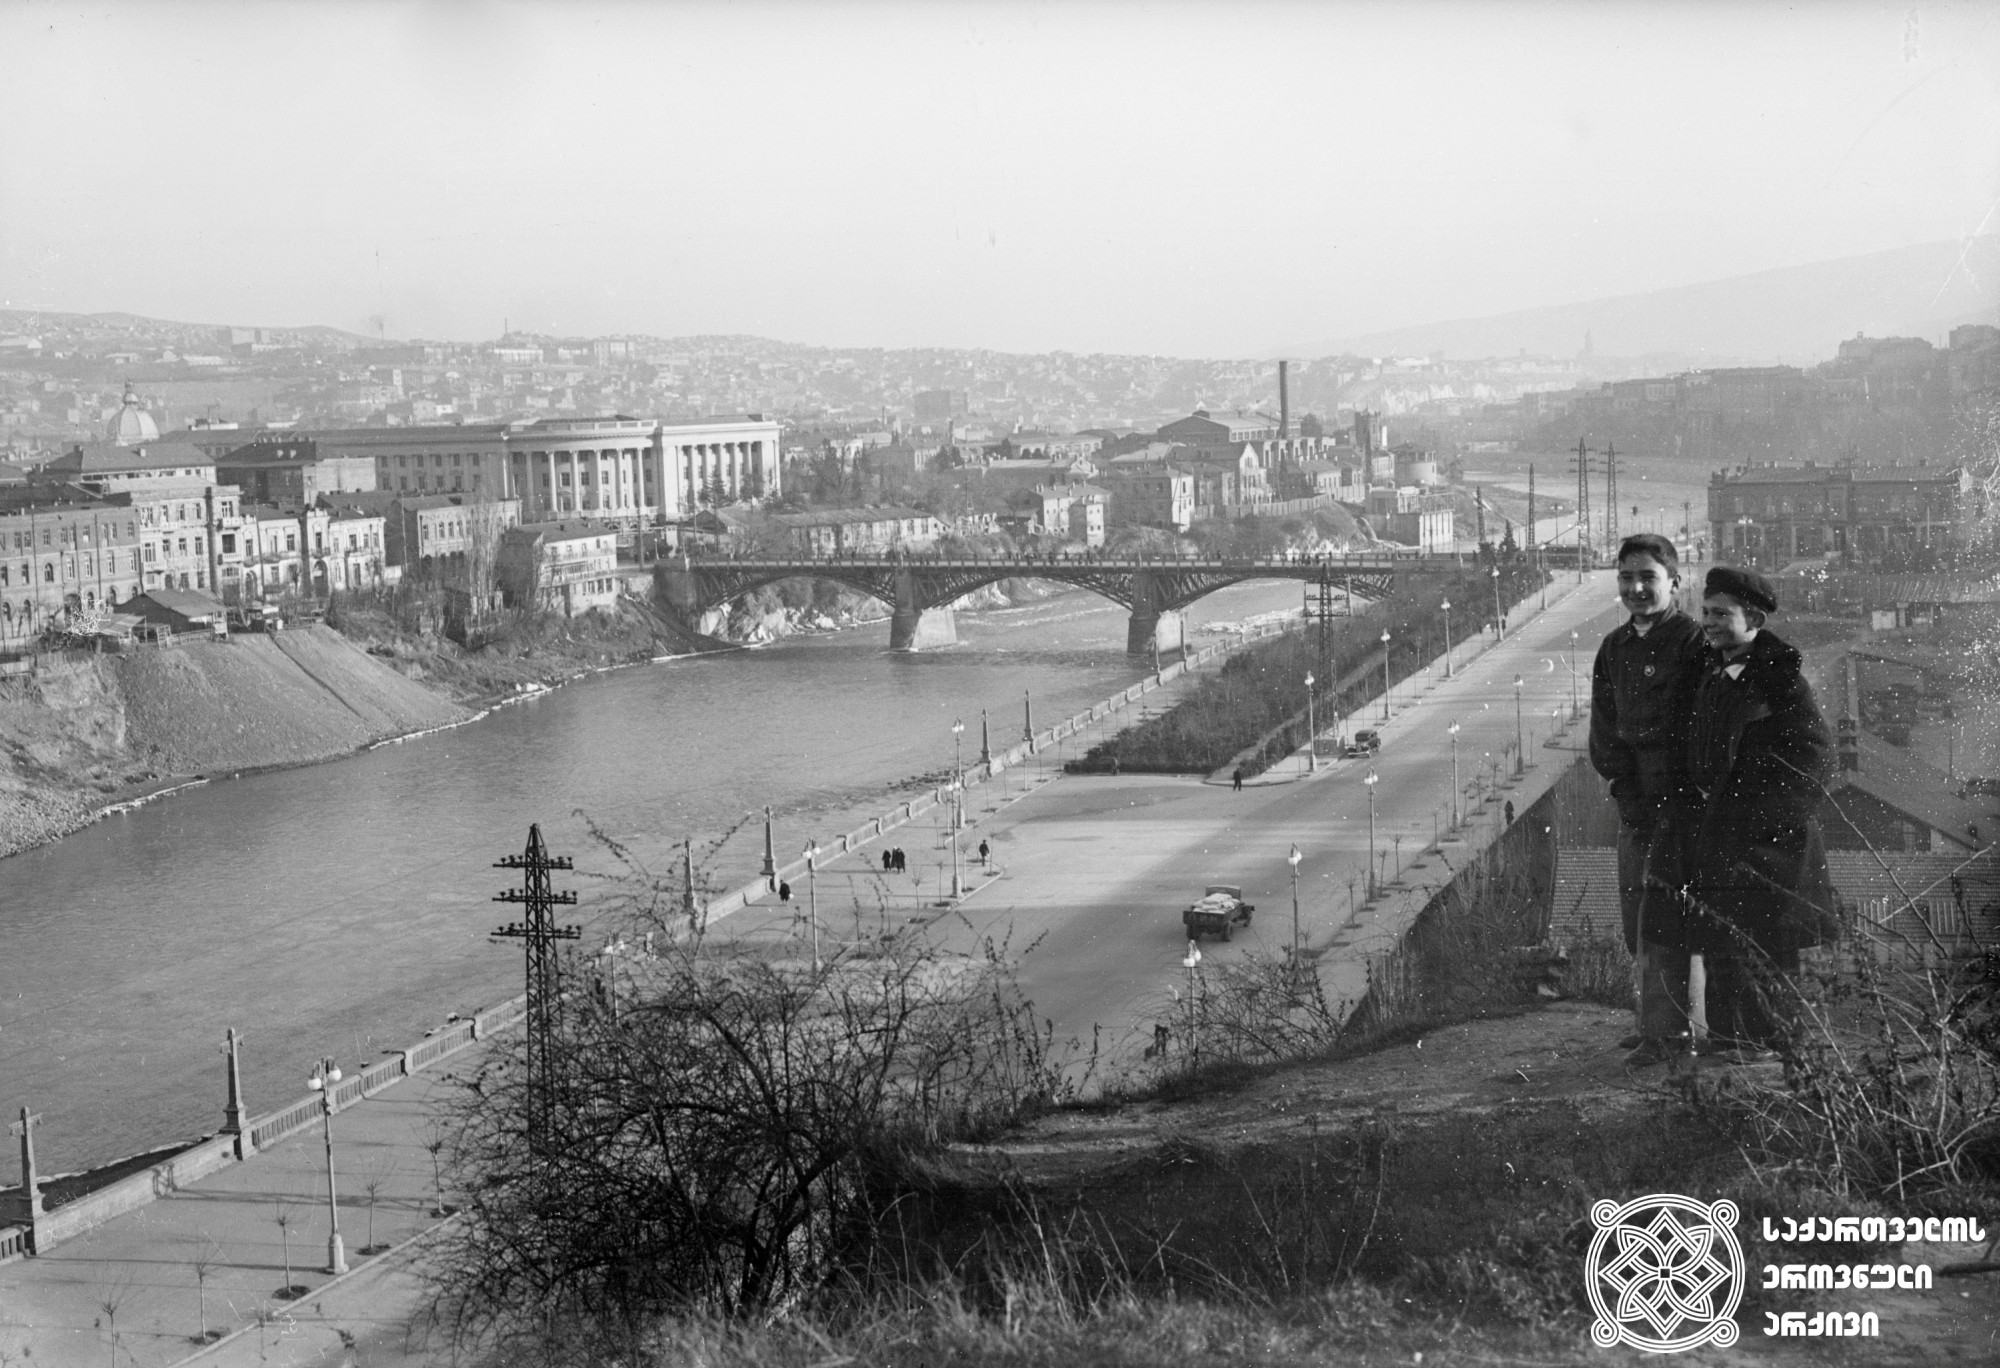 სტალინის სახელობის ახალი სანაპირო და ელბაქიძის ხიდი (დღევანდელი გალაკტიონის ხიდის მიმდებარედ). თბილისი. <br>  ფოტო: მიხეილ კვირიკაშვილი. <br> 1941. <br> 
Stalin New Embankment and Elbakidze Bridge (today Galaktioni Bridge) Tbilisi. <br>  Photo by Mikheil Kvirikashvili. <br> 1941.
.